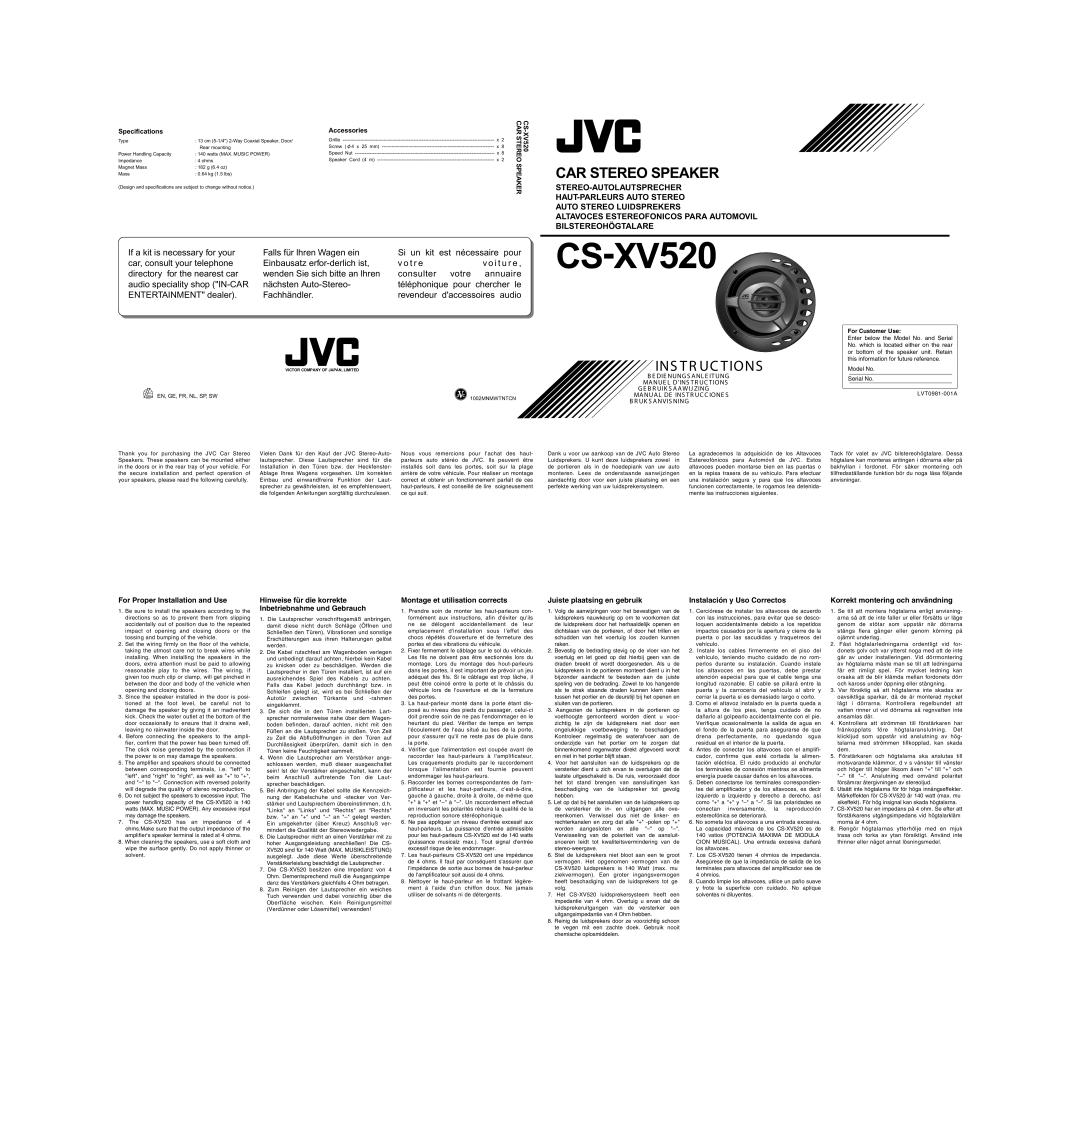 JVC CS-XV520 specifications Car Stereo Speaker 